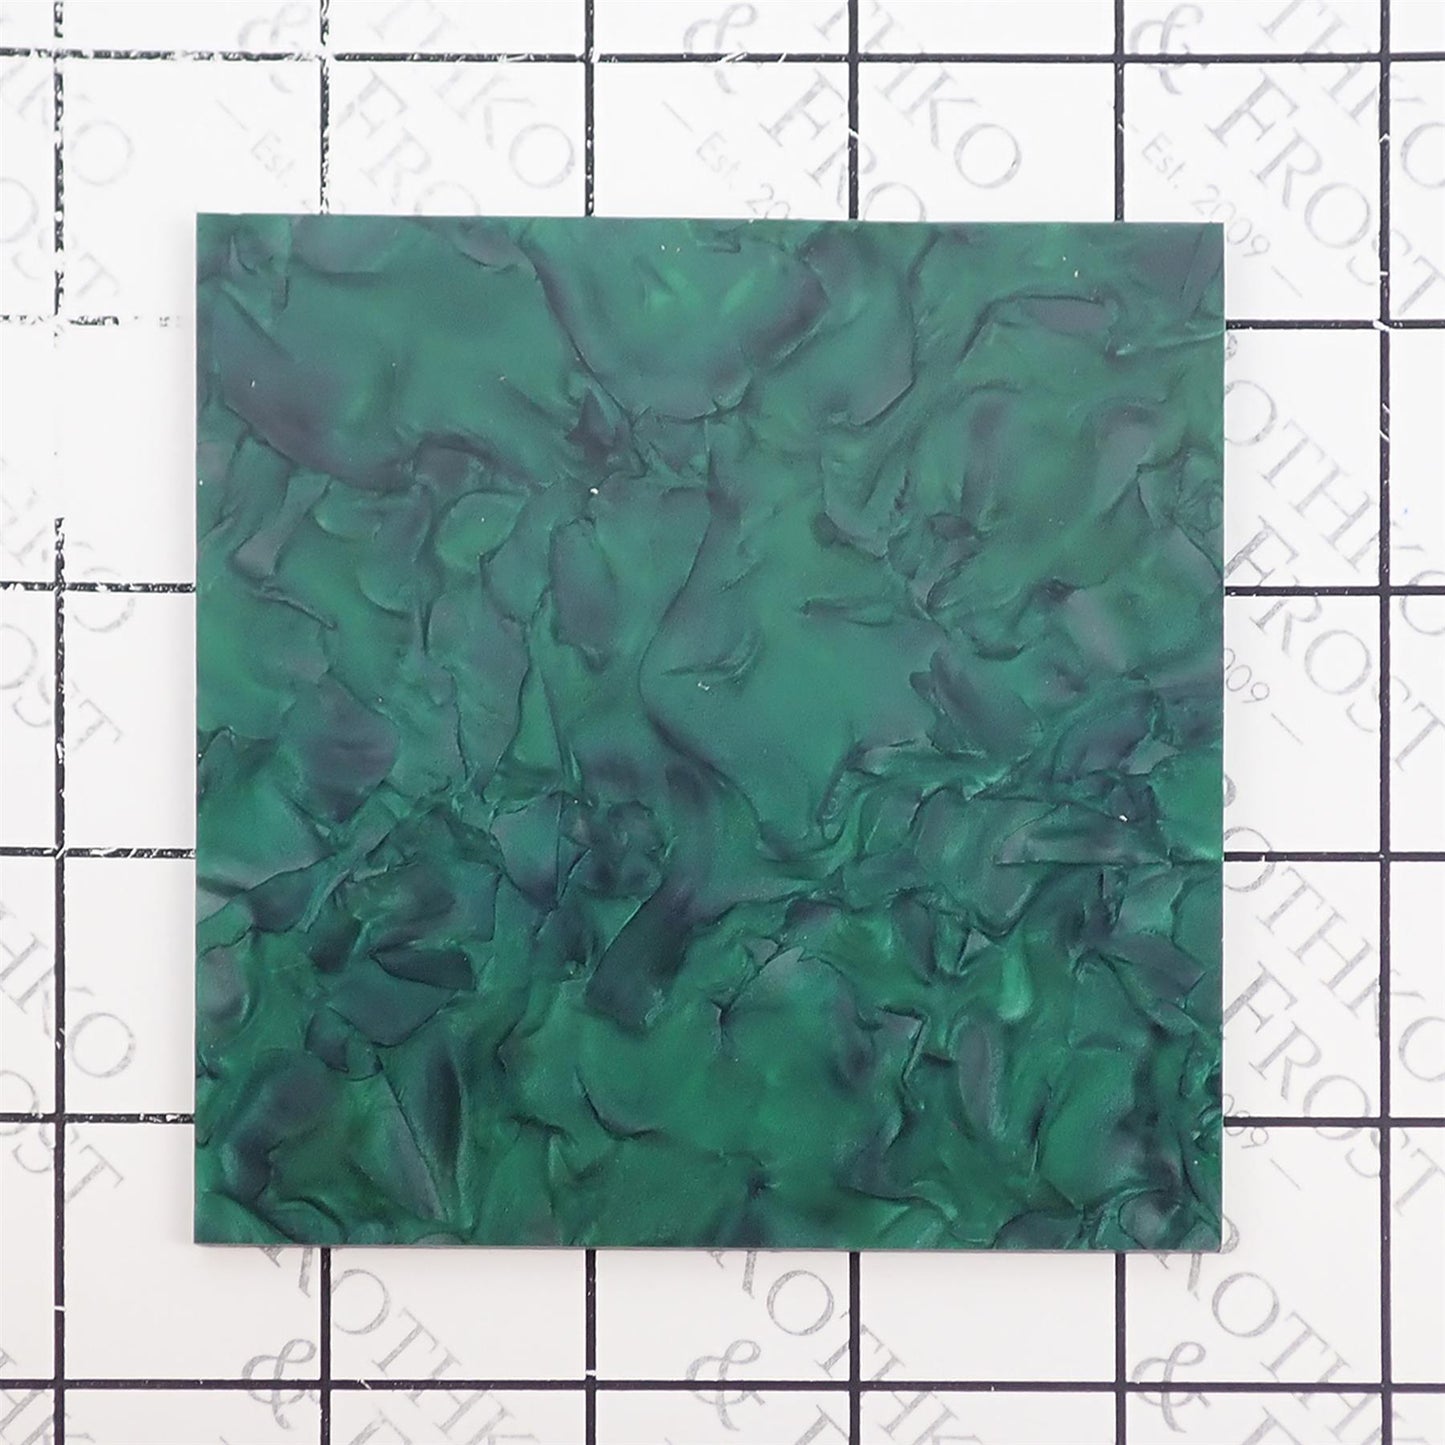 Incudo Emerald Green Pearloid Acrylic Sheet - 400x300x3mm (15.7x11.81x0.12")